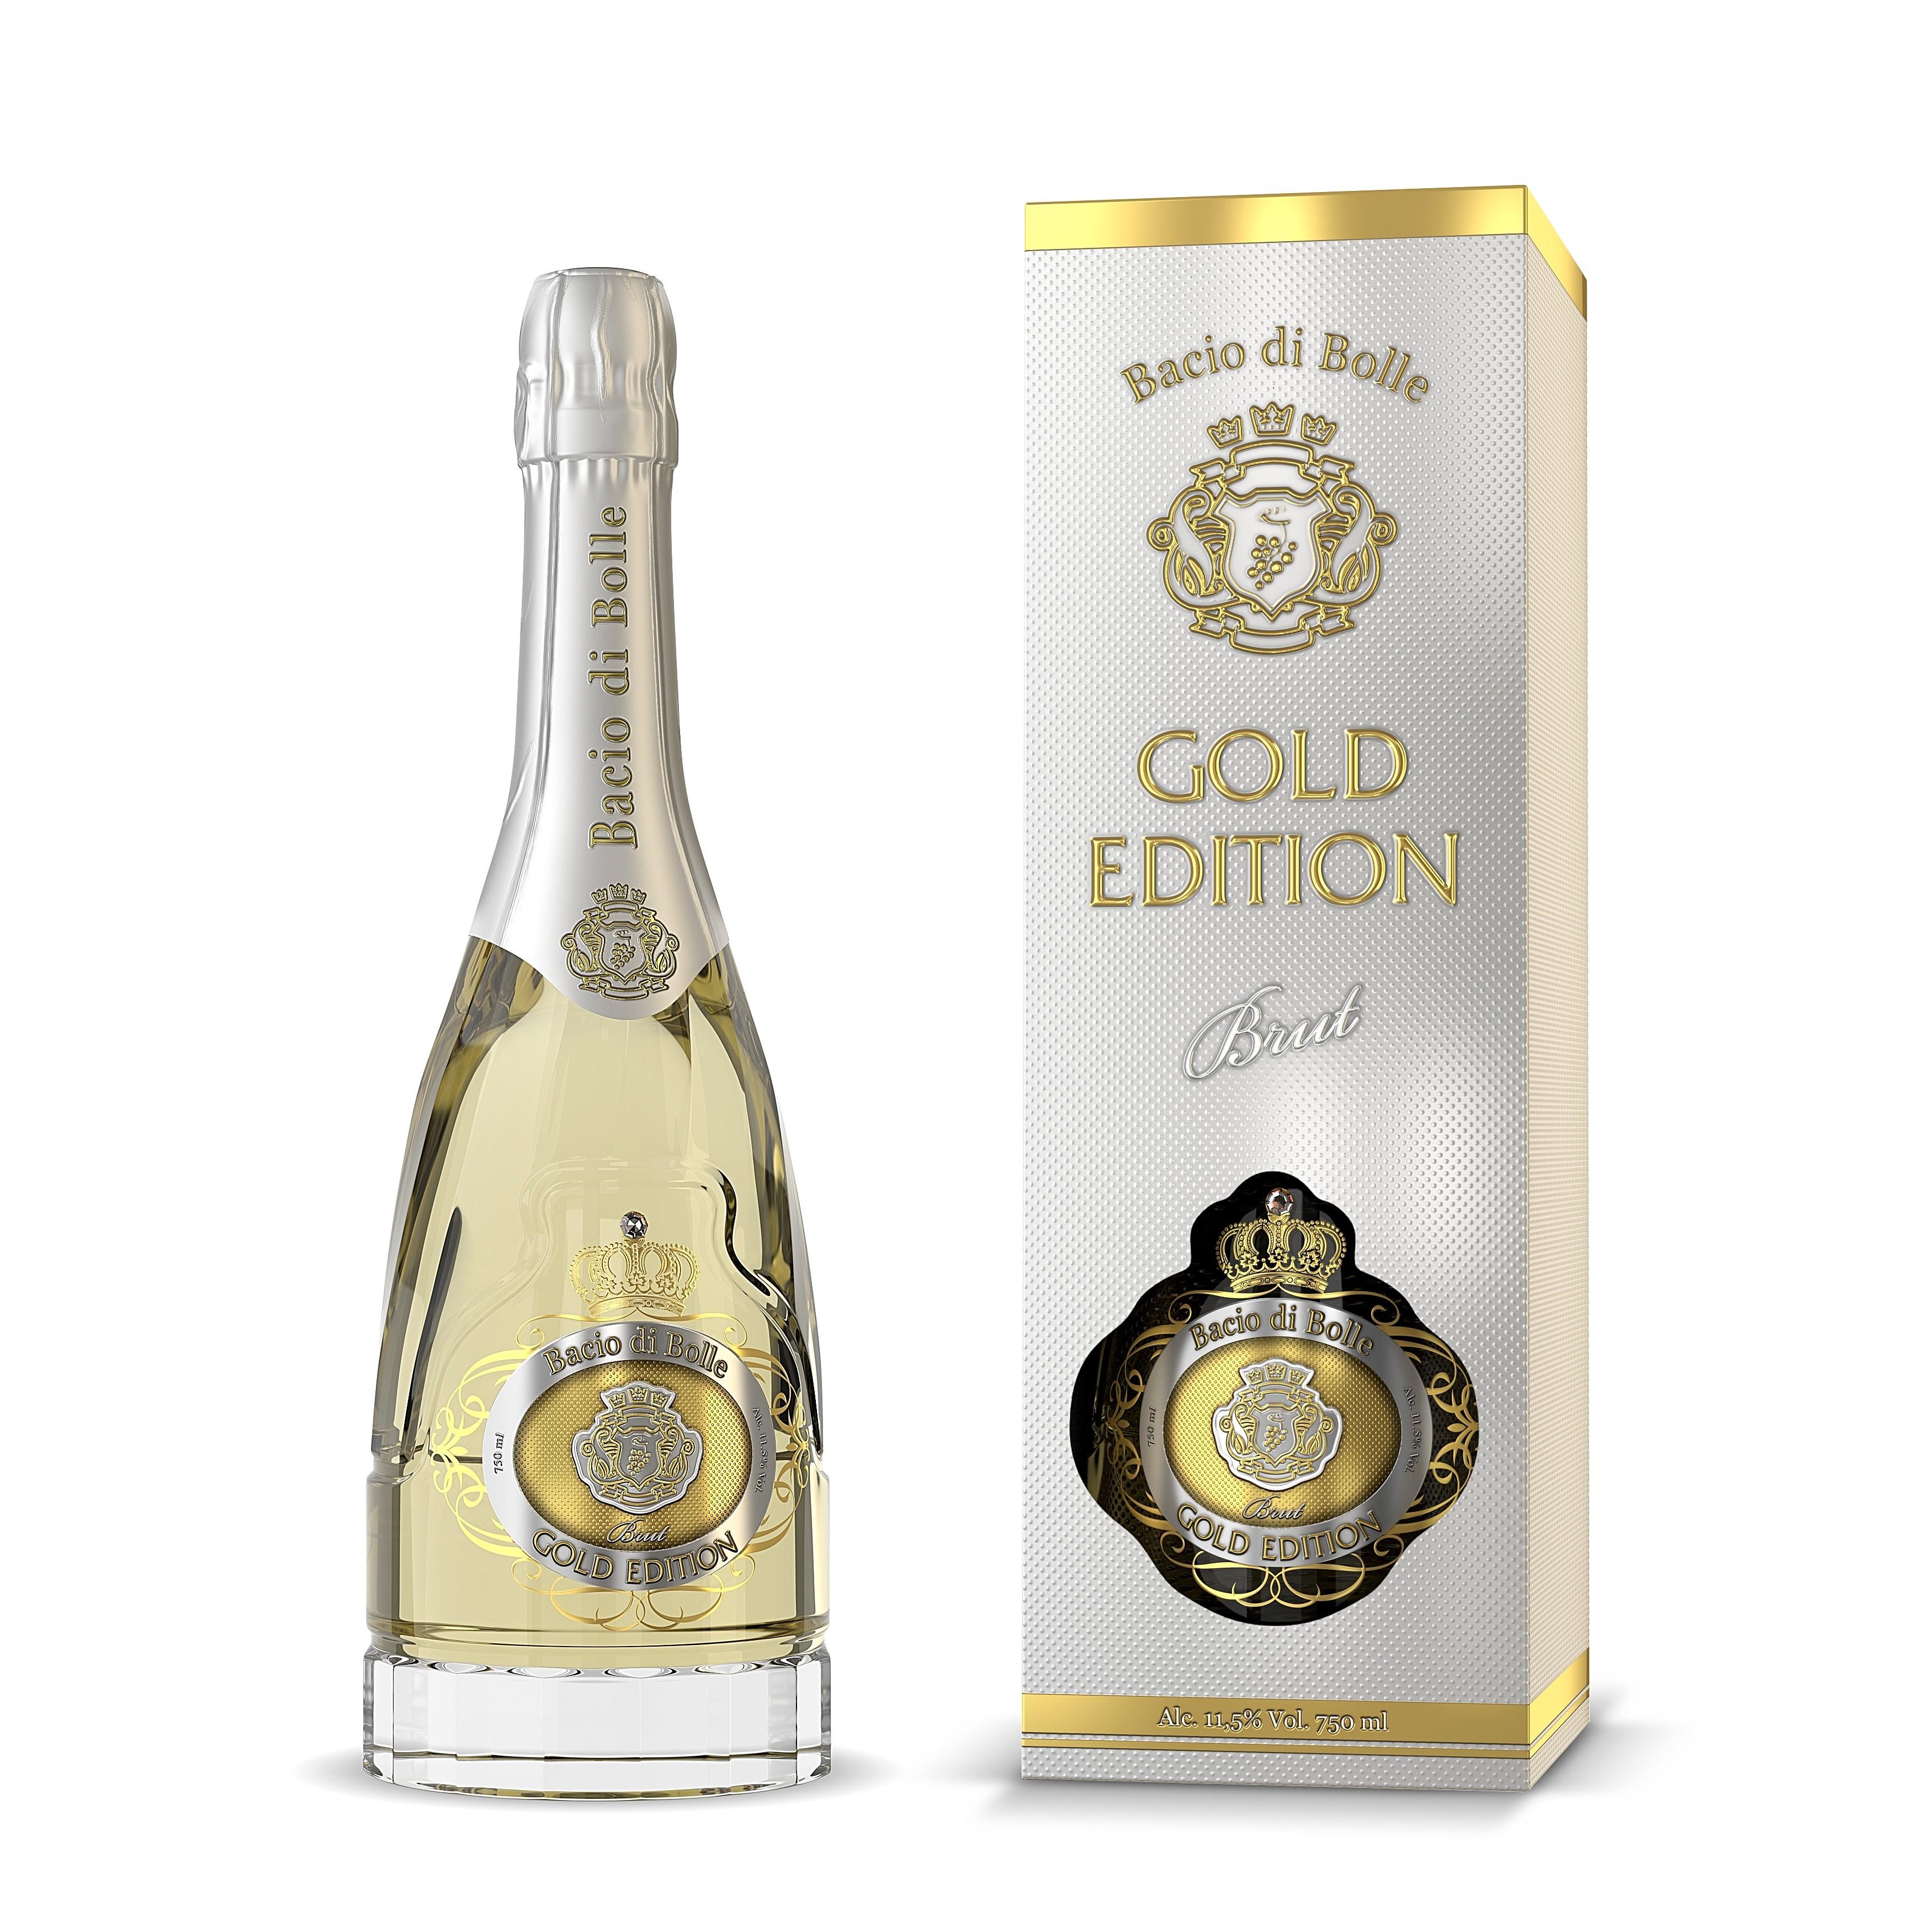 Bacio Di Bolle Gold Edition - bílé šumivé suché víno obsahující malé částečky zlata 0,75l